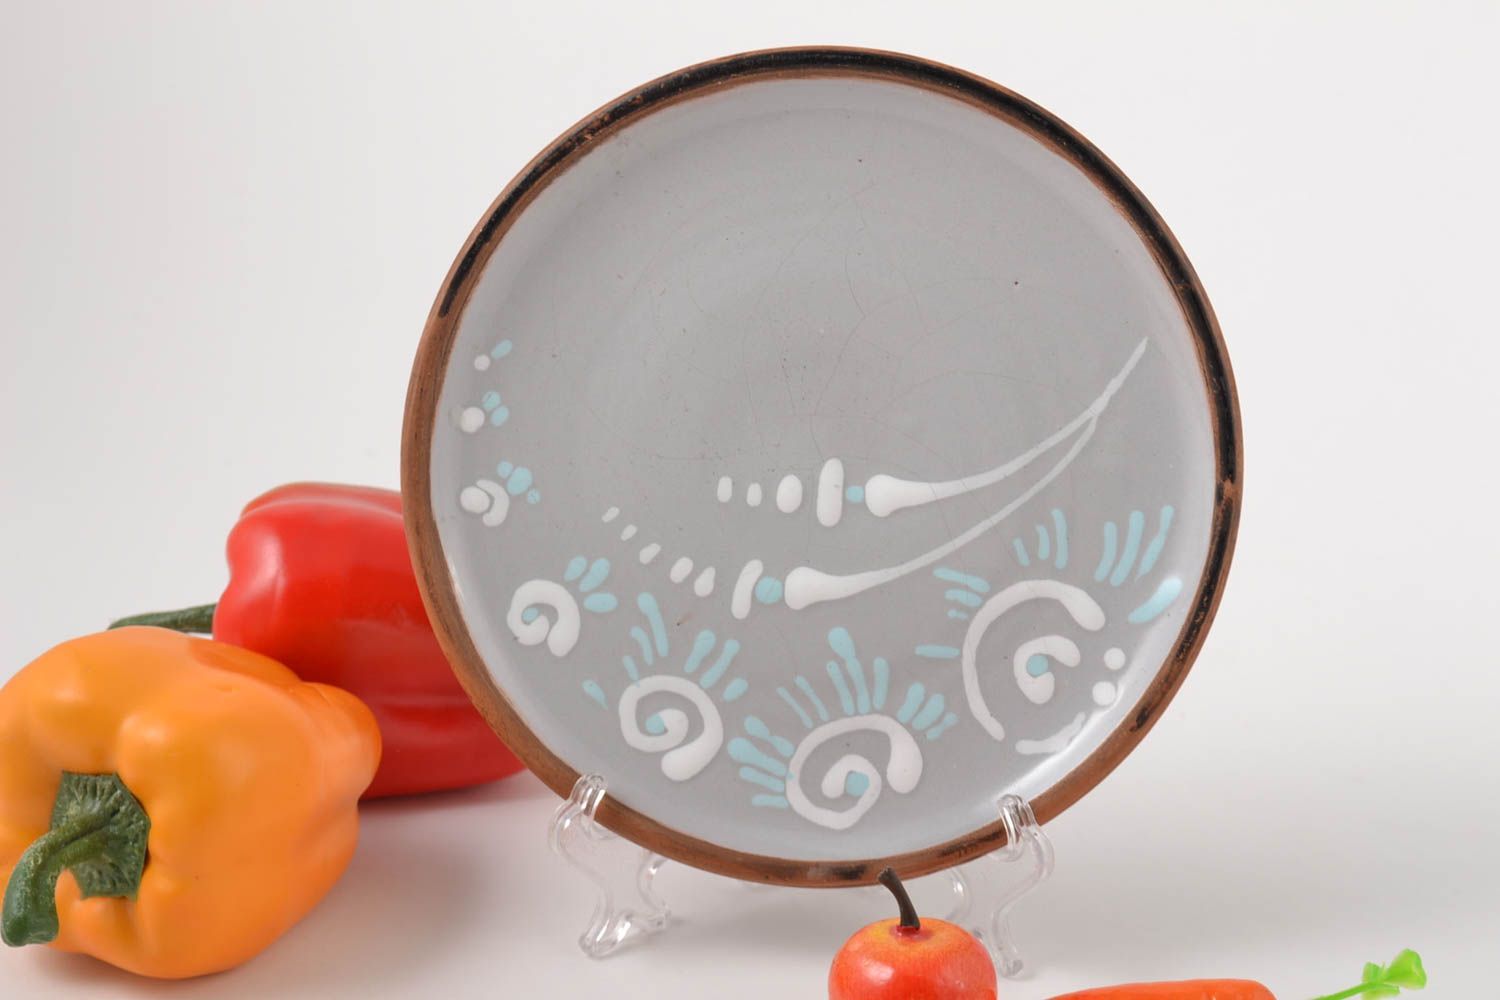 Керамическая тарелка авторского дизайна керамика ручной работы глиняная тарелка  фото 1